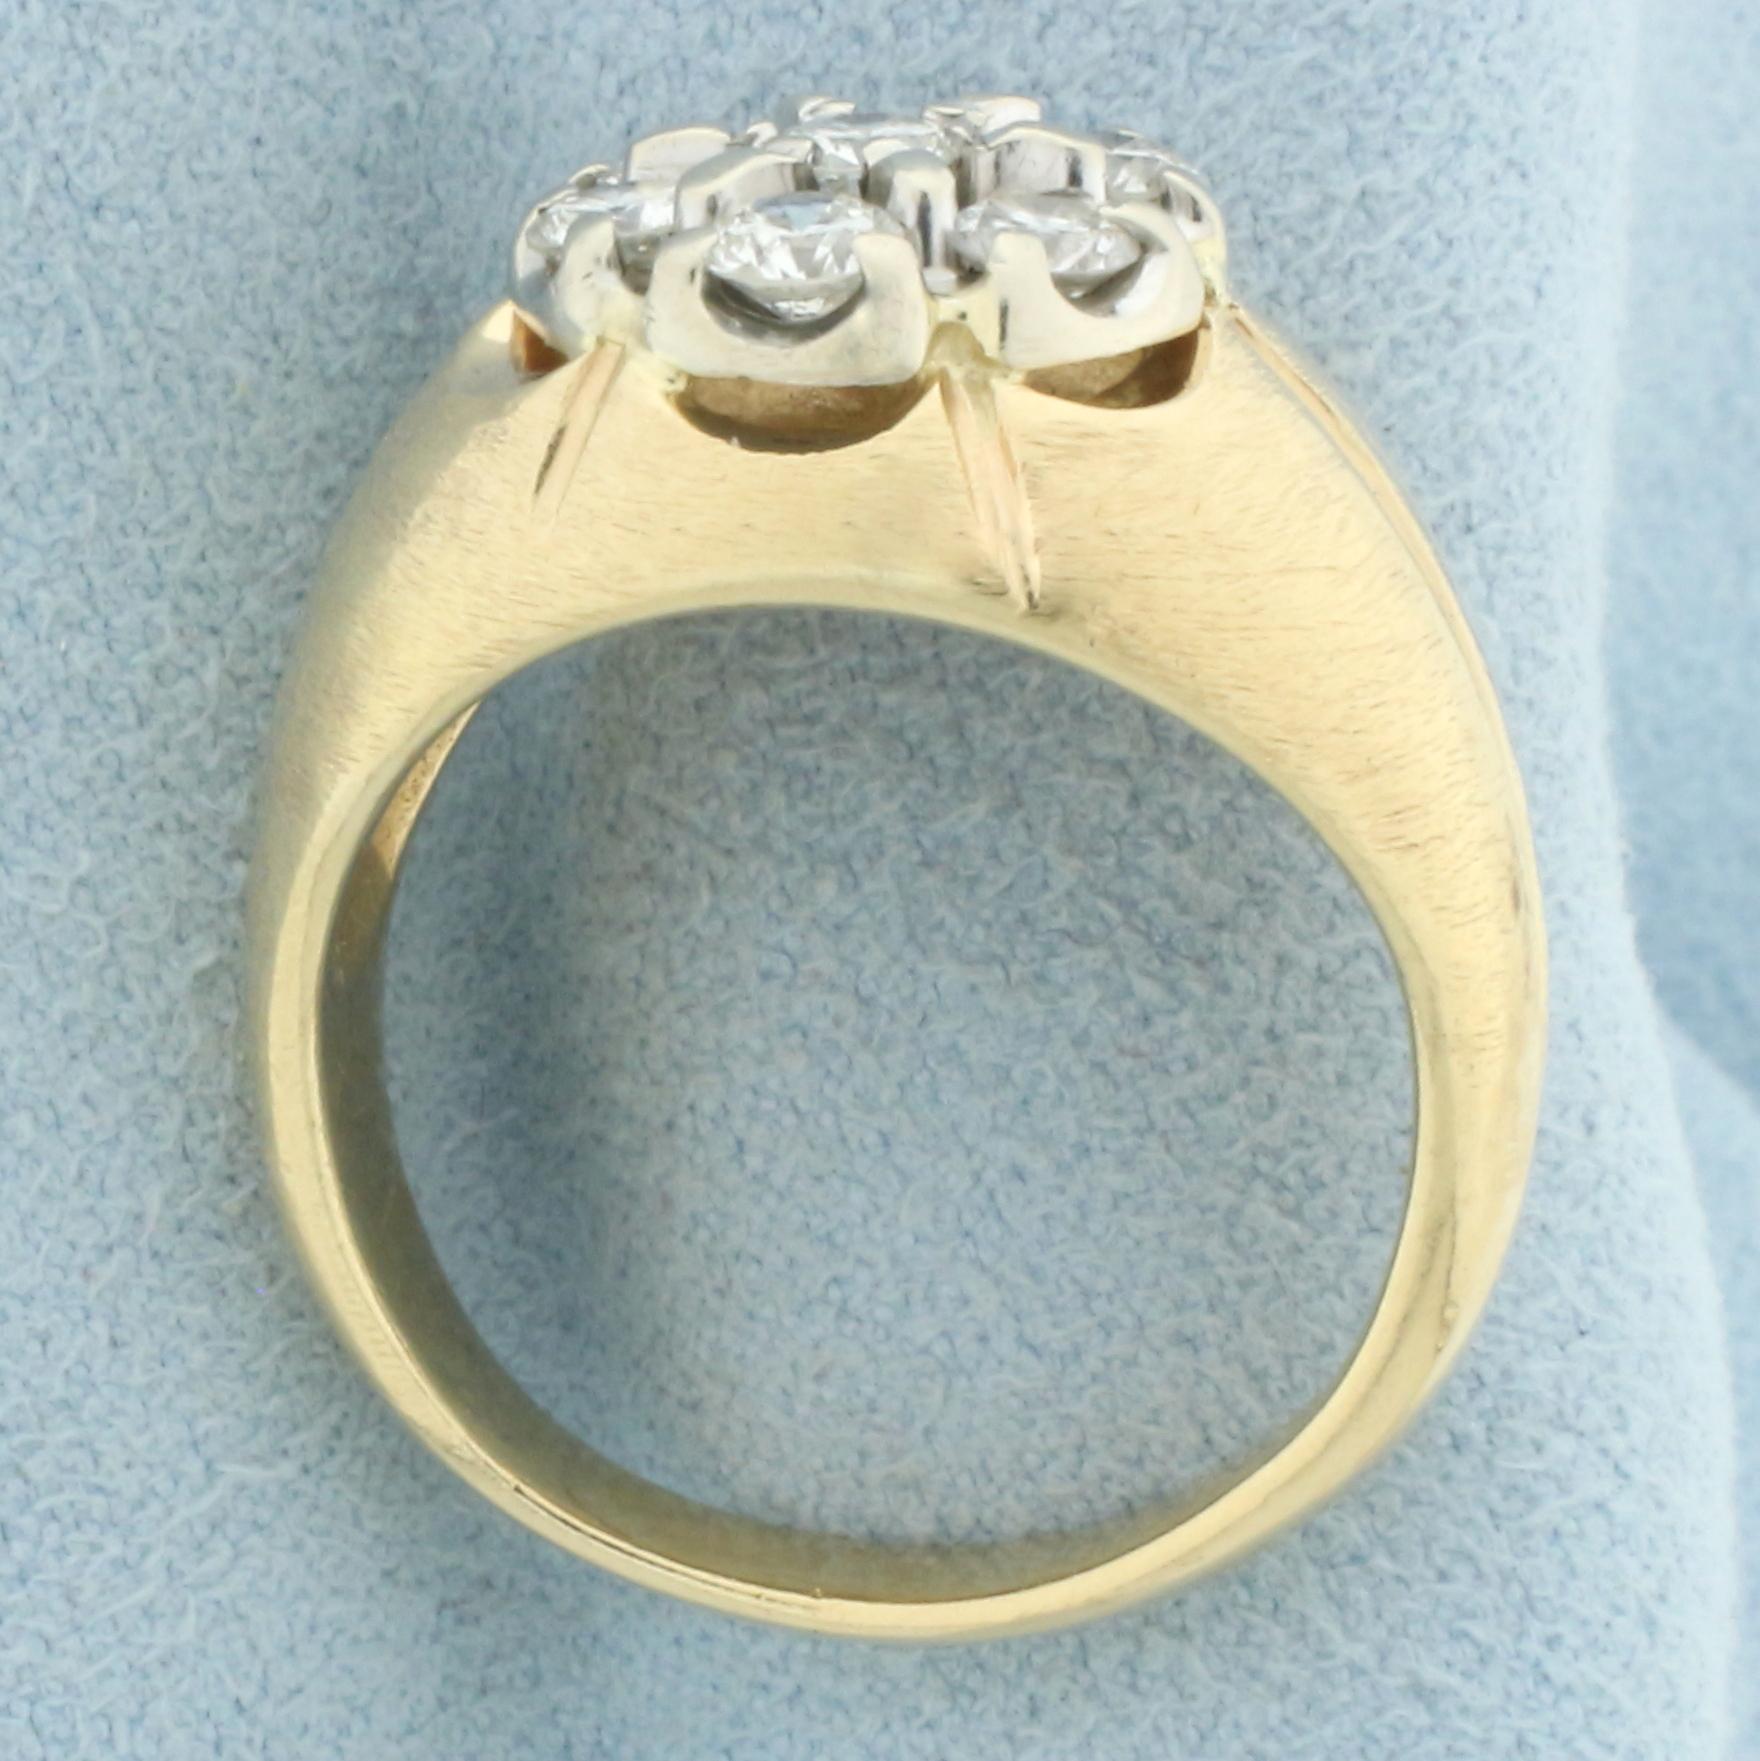 Diamond Target Design Ring In 14k Yellow Gold